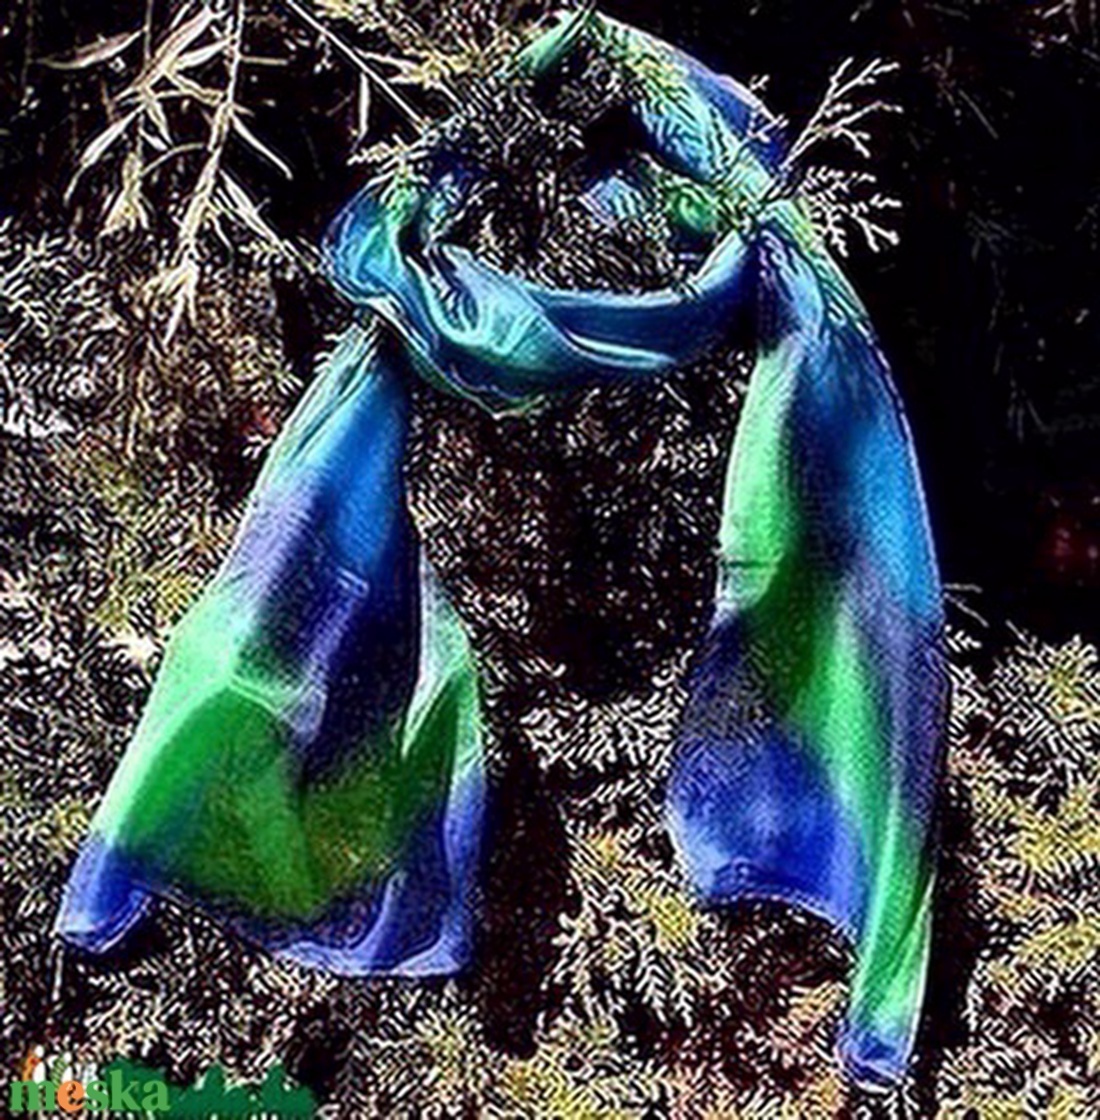 Kék-zöld, egyedi tervezésű, kézzel festett szín átmenetes selyemsál - ruha & divat - sál, sapka, kendő - sál - Meska.hu